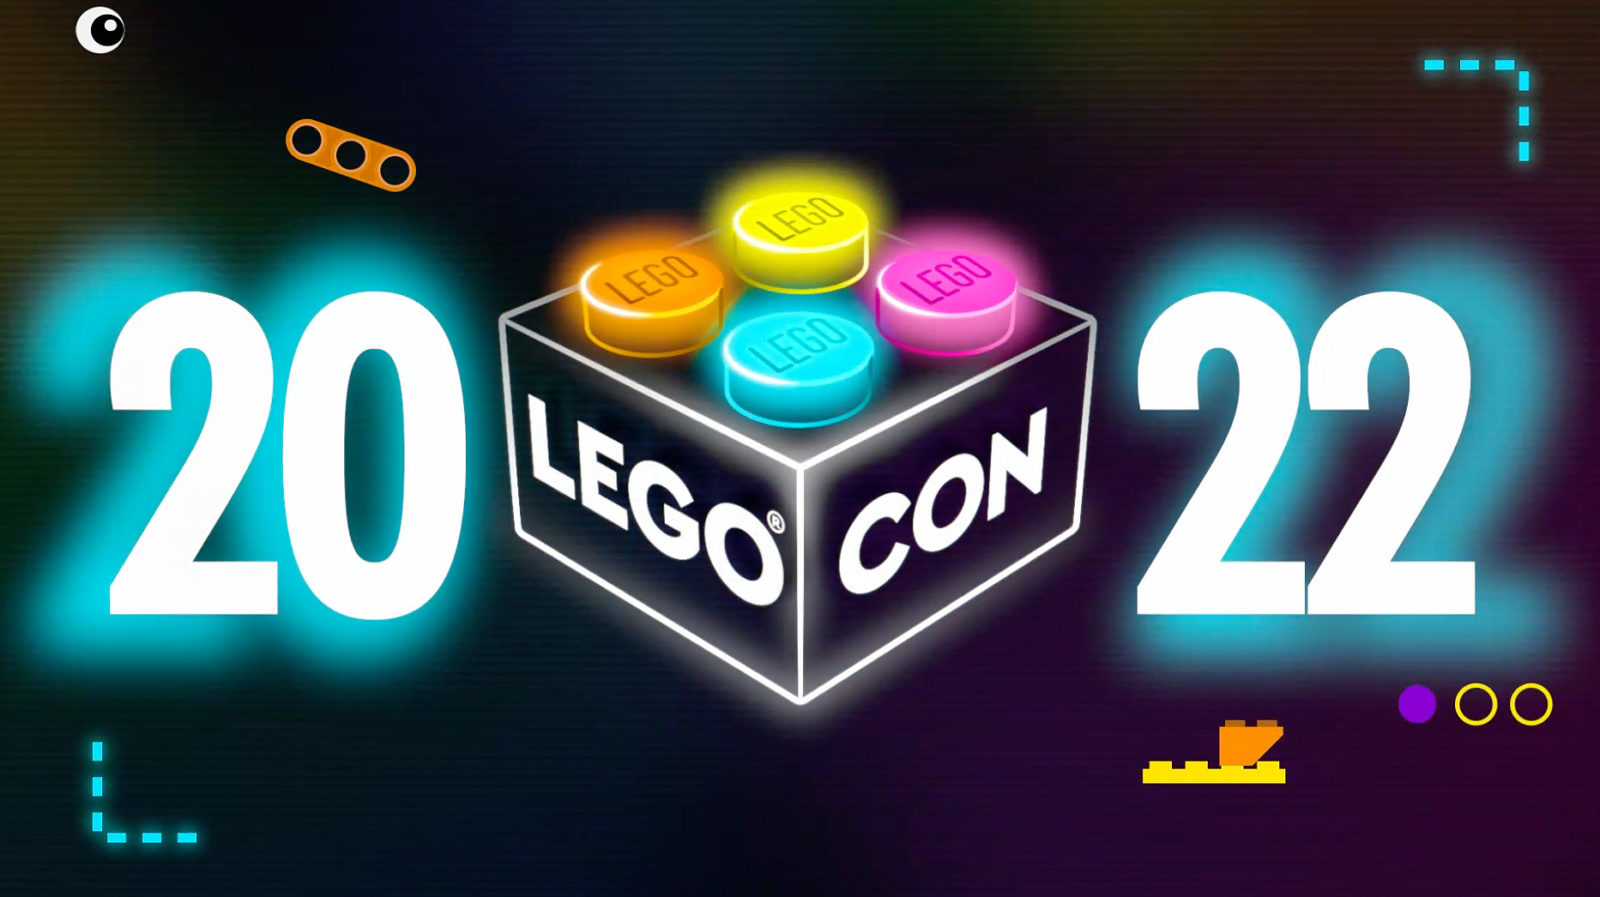 LEGO CON 2022：樂高在線大會將於 18 年 2022 月 XNUMX 日回歸